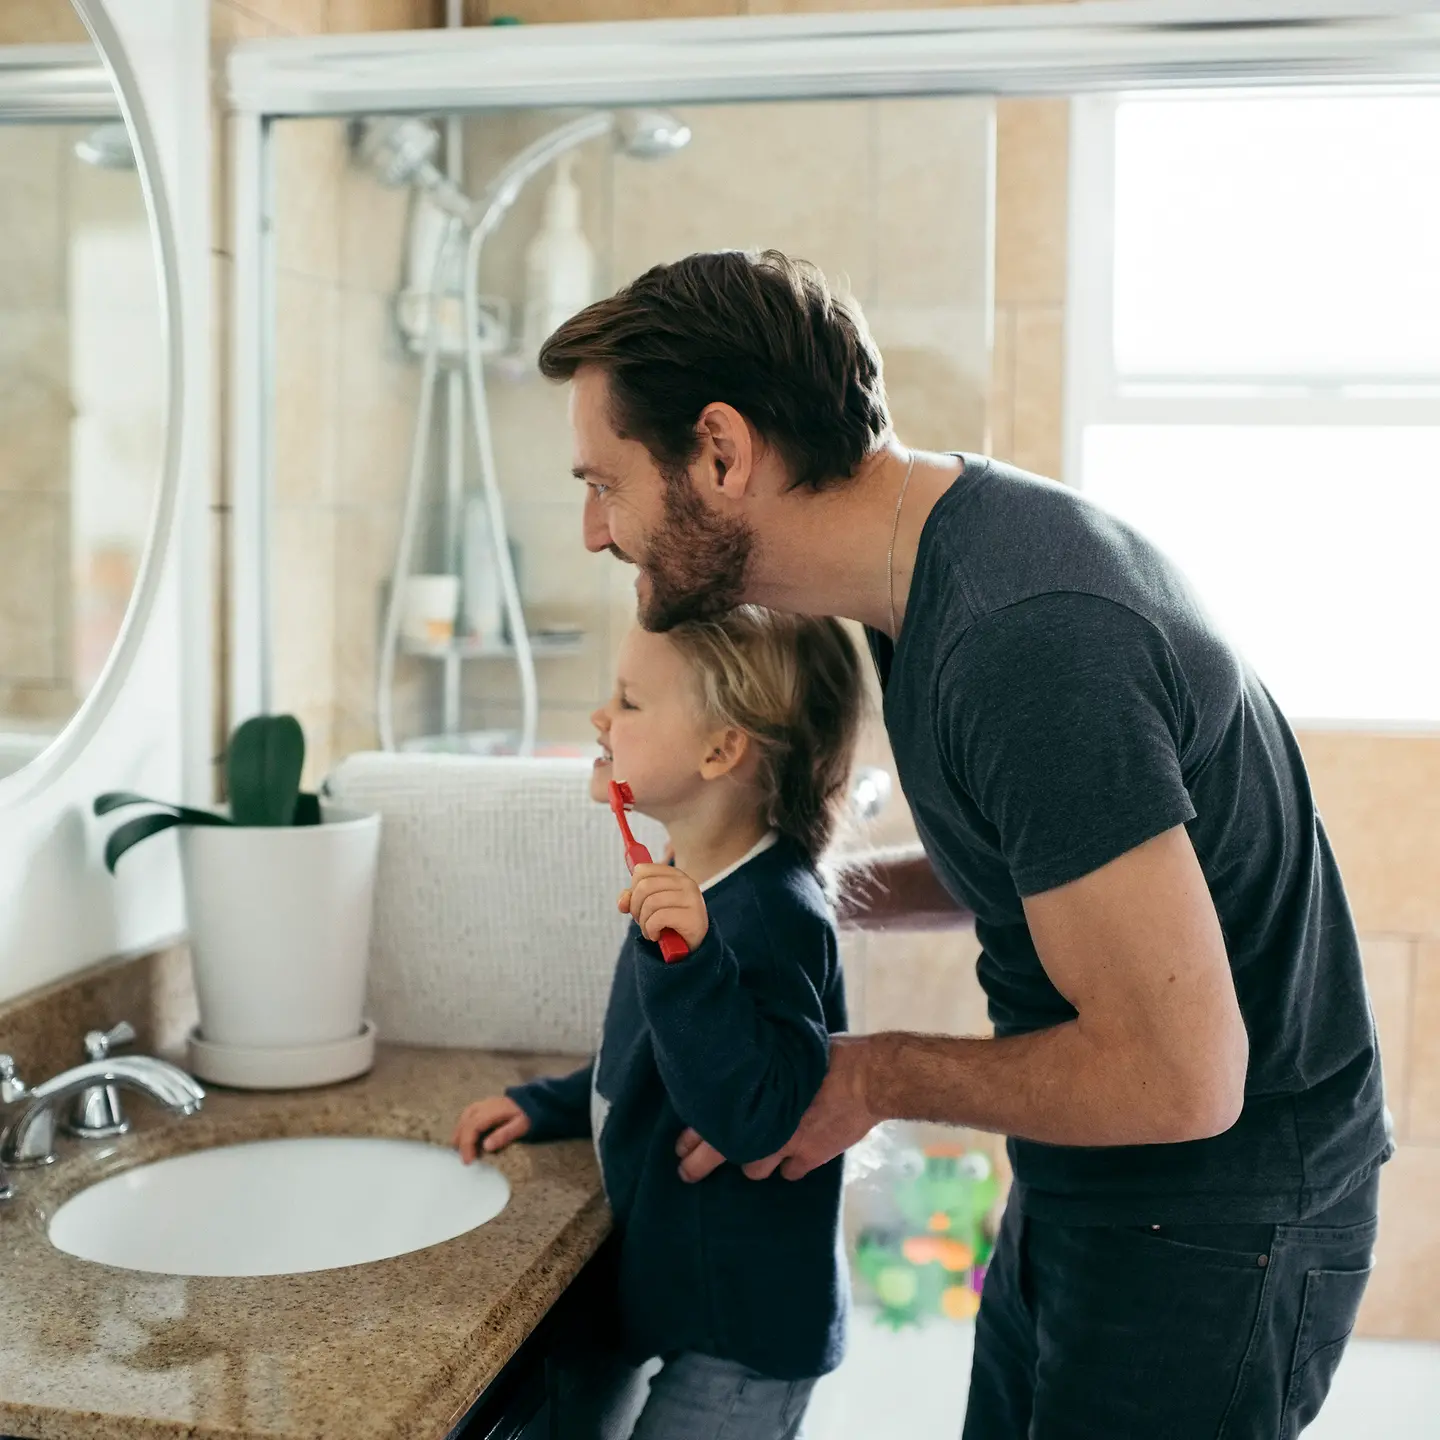 Vater und Tochter im Bad beim Zähne putzen